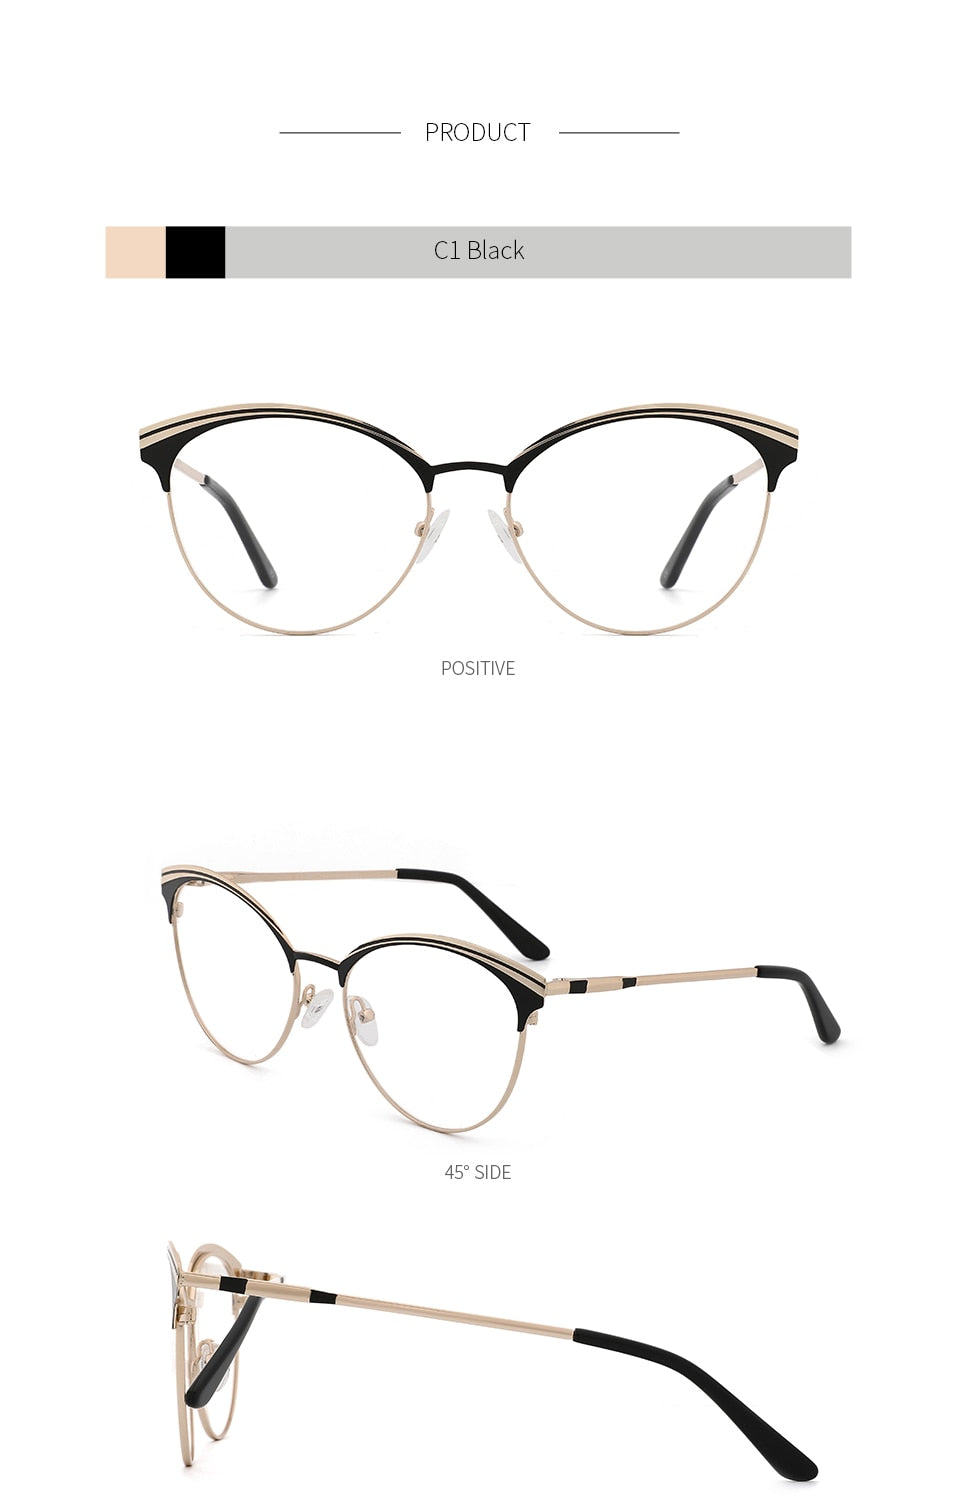 Kansept Women's Eyeglasses Metal Eyewear Frame Round Spectacle Frames Kl8425 Frame Kansept   